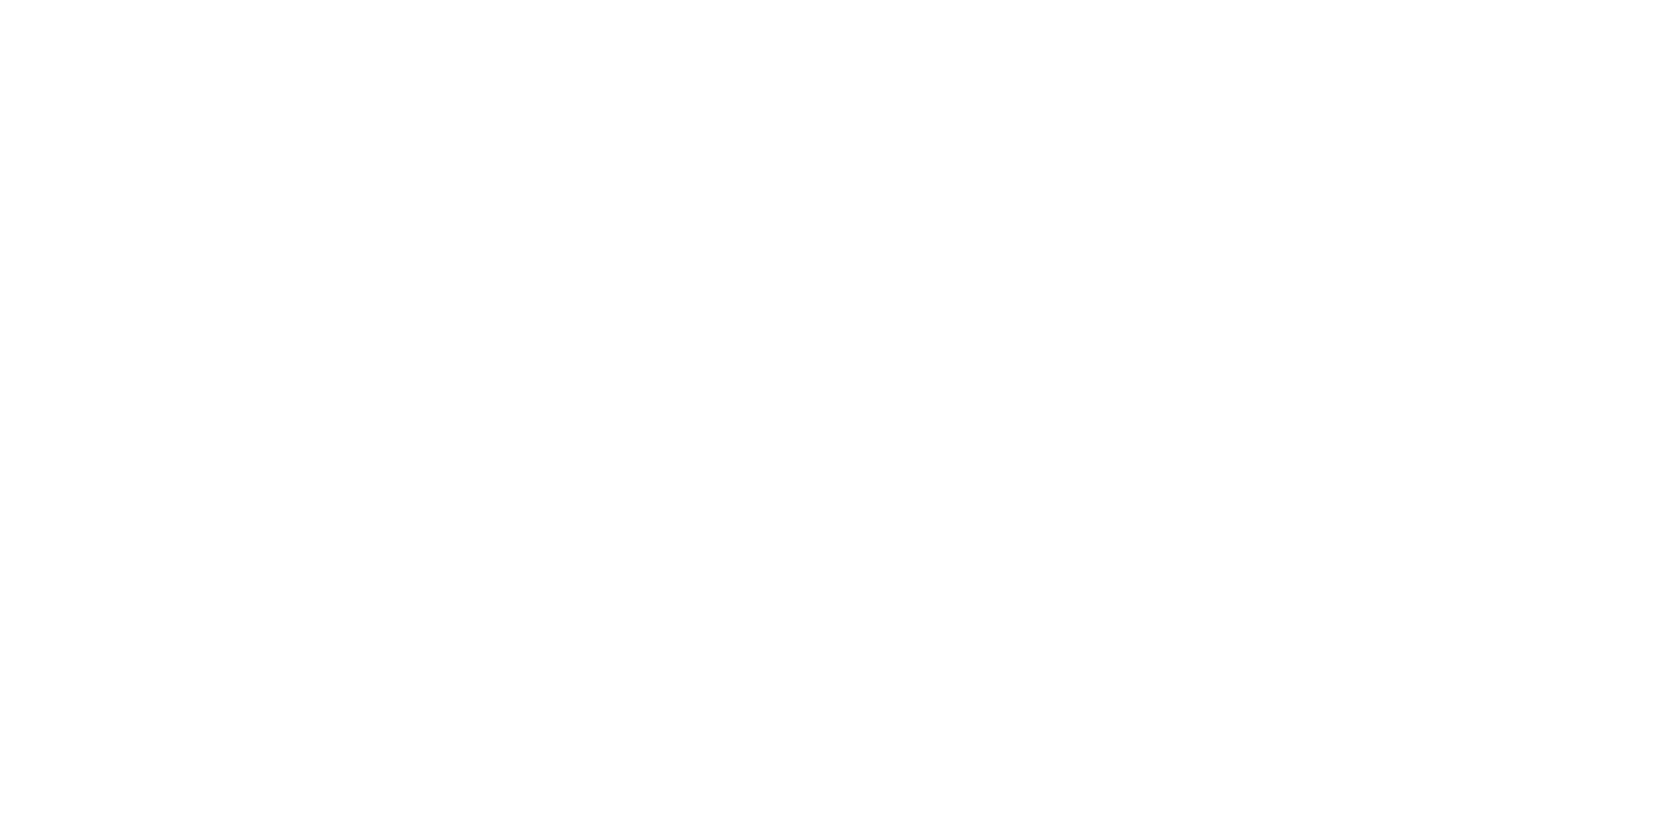 logo université du mans